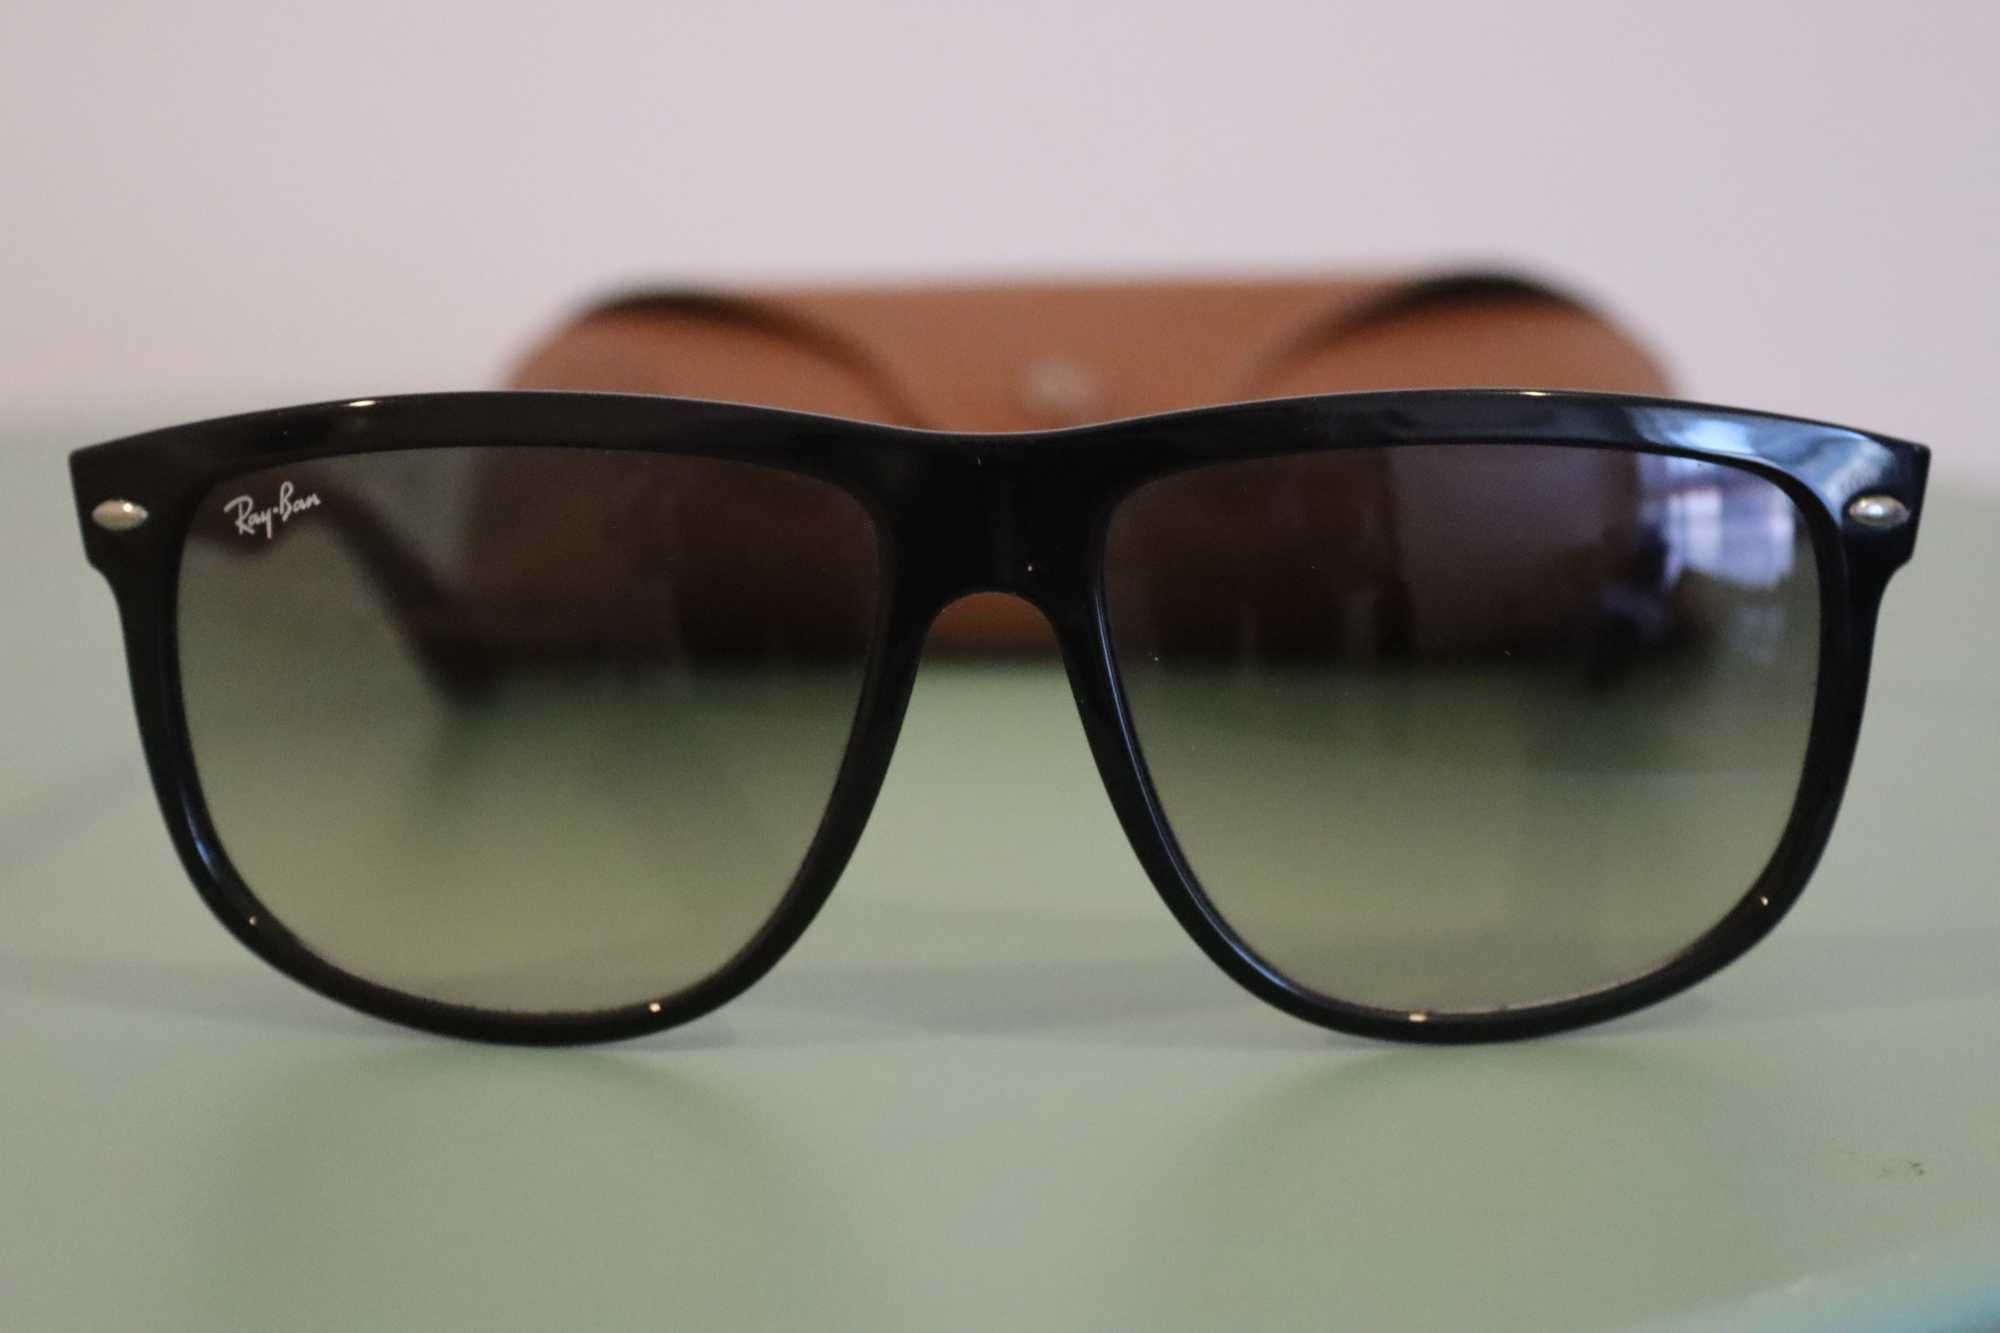 Óculos de sol RayBan modelo Boyfriend originais como novos